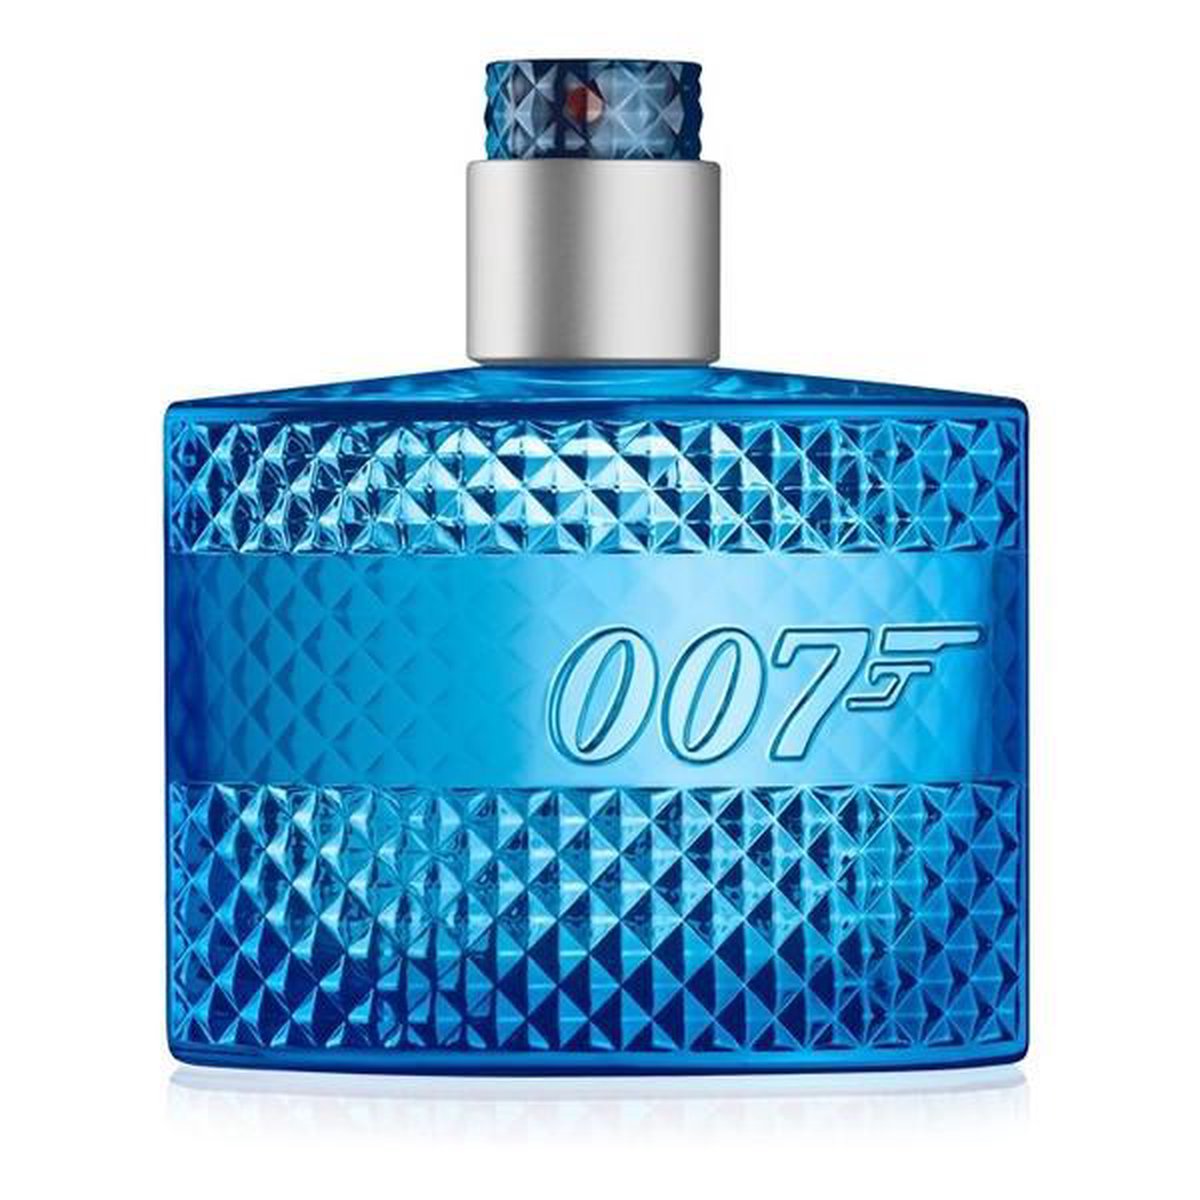 007 Ocean Royale by James Bond 50 ml - Eau De Toilette Spray